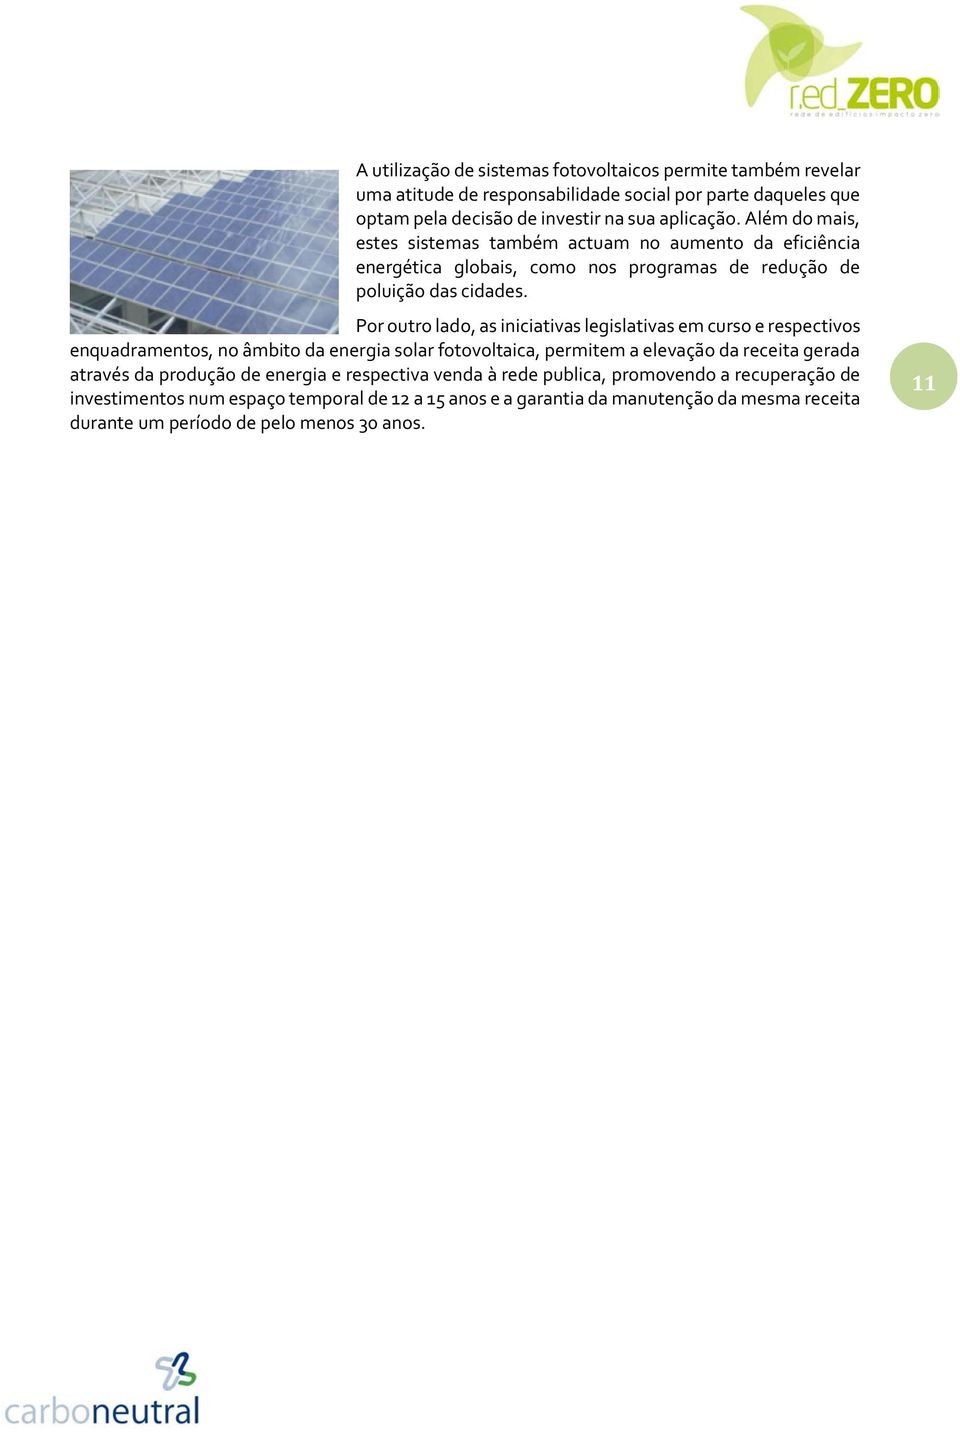 Por outro lado, as iniciativas legislativas em curso e respectivos enquadramentos, no âmbito da energia solar fotovoltaica, permitem a elevação da receita gerada através da